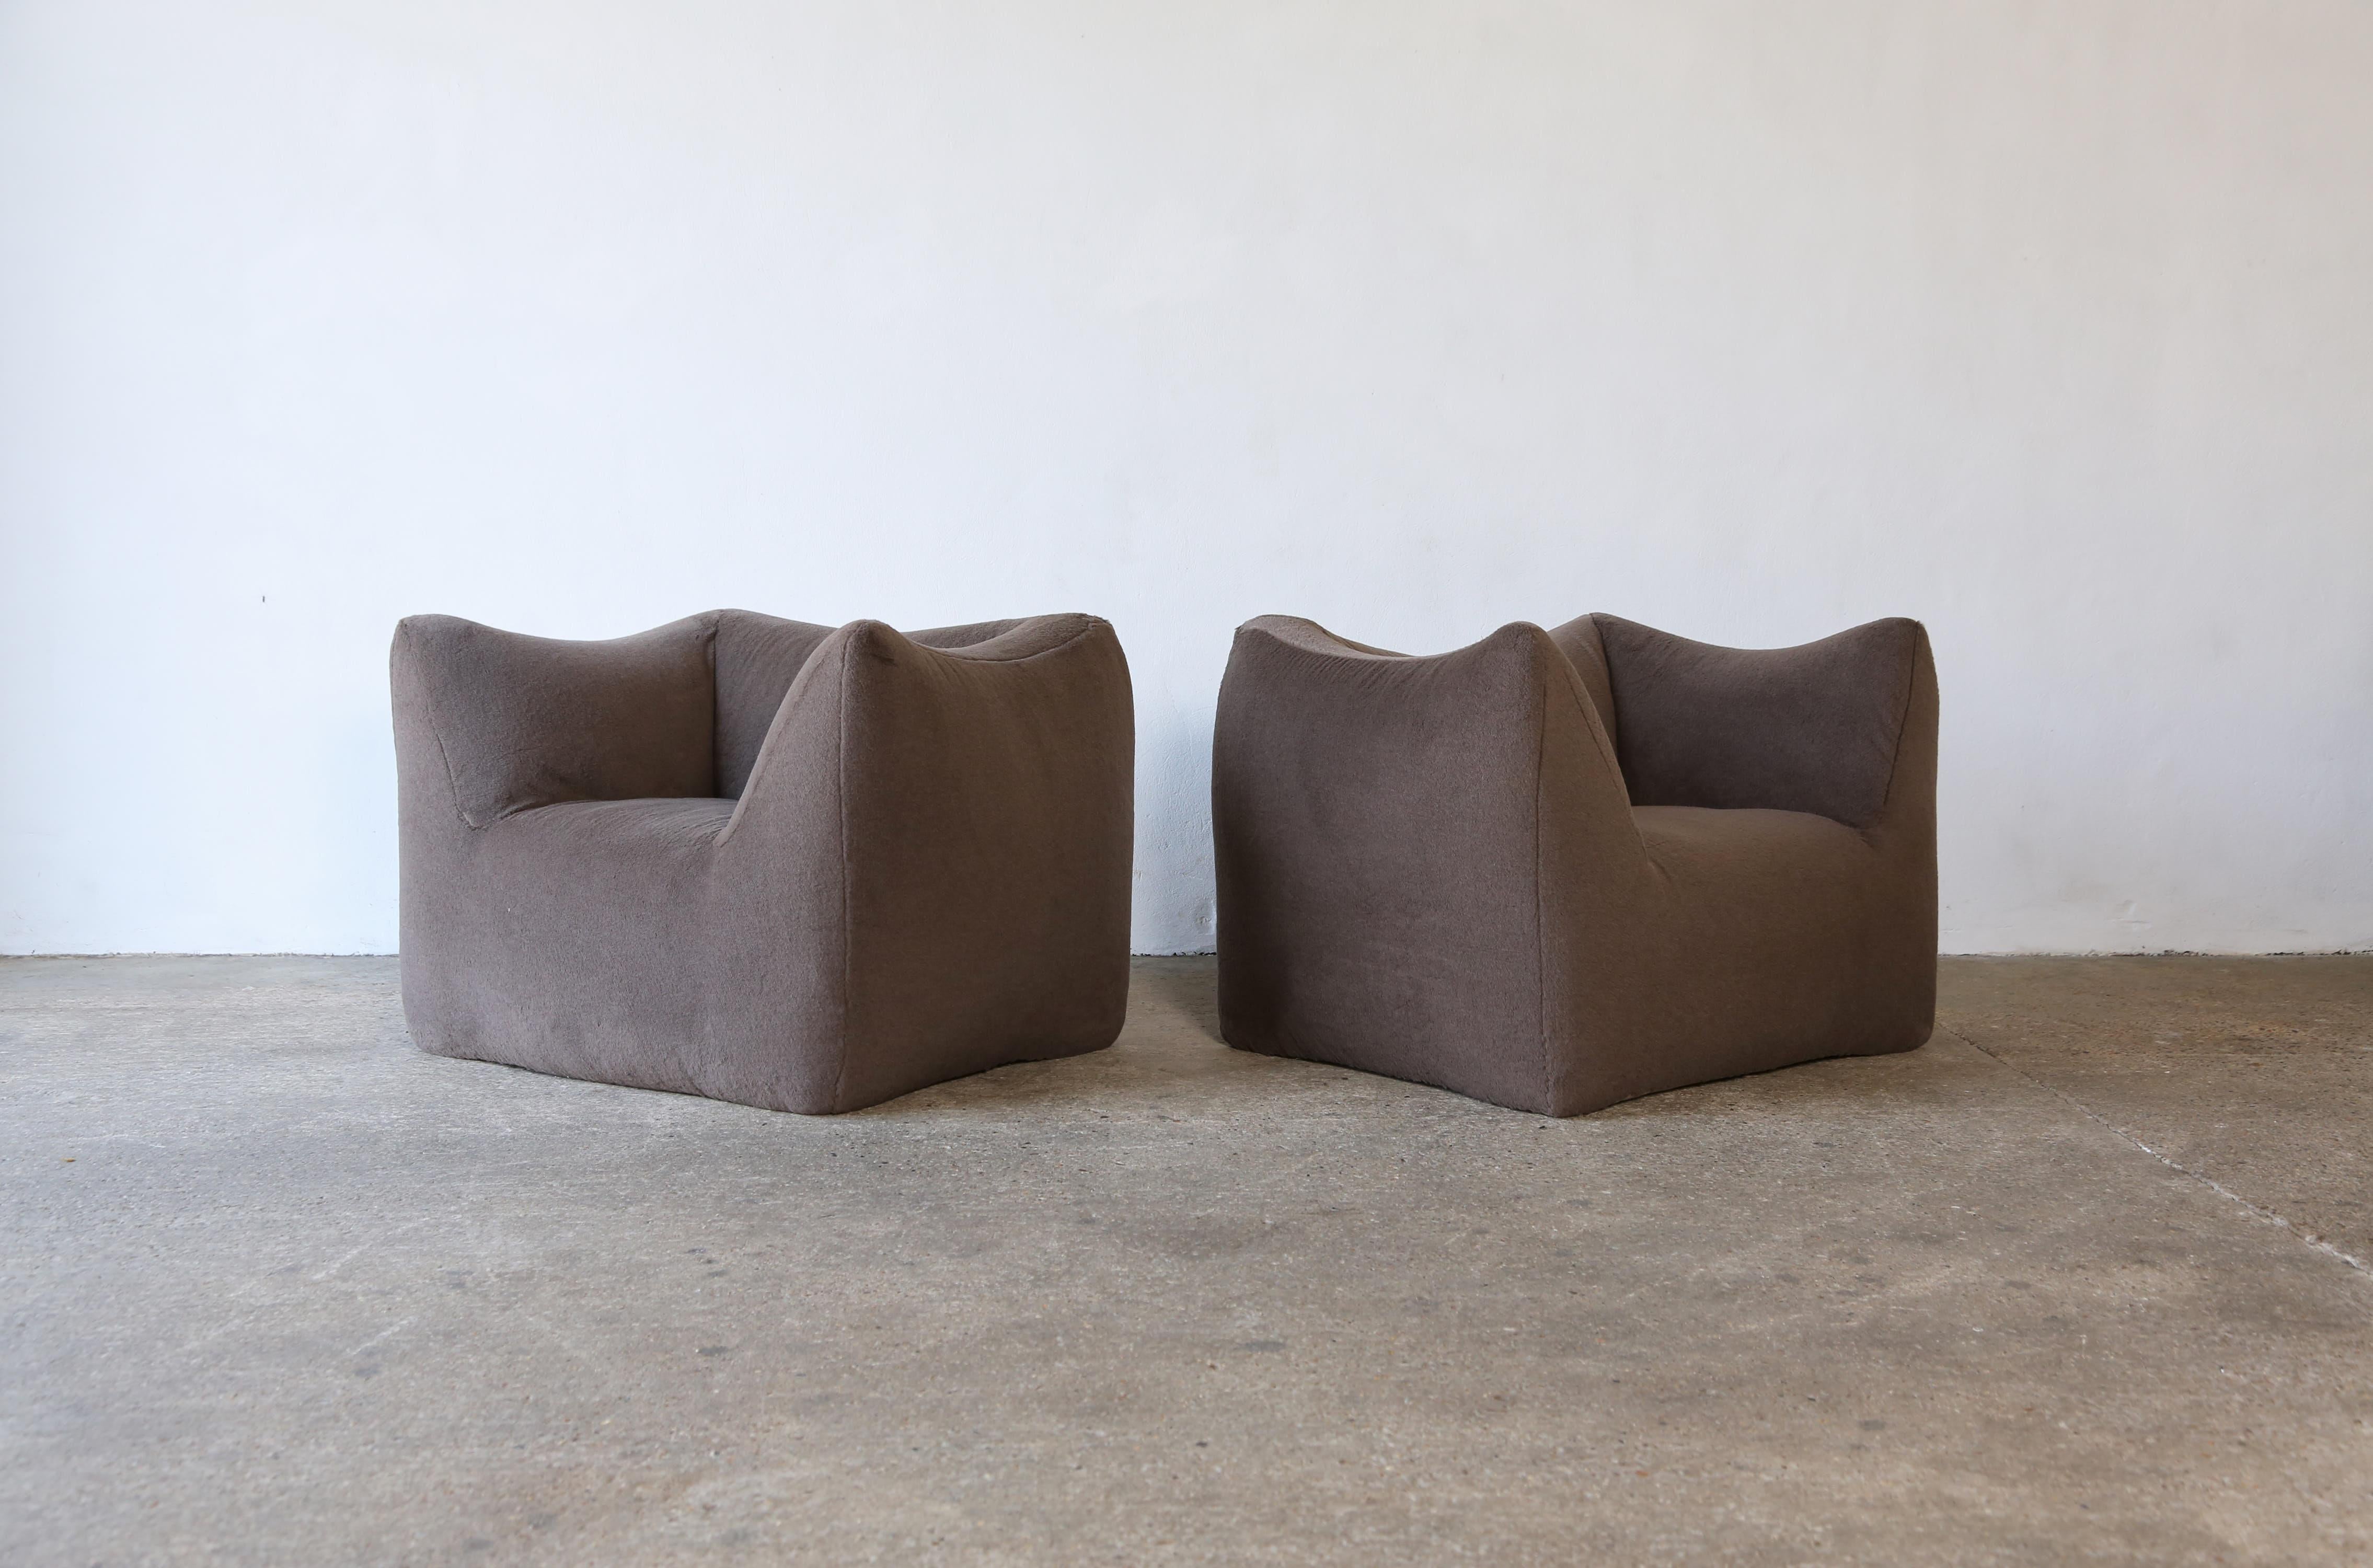 Magnifique paire de chaises longues Mario Bellini Le Bambole, nouvellement tapissées d'un tissu 100% Alpaga marron/gris de première qualité, produit par B&B Italia, Italie, dans les années 1970. Expédition rapide dans le monde entier.



